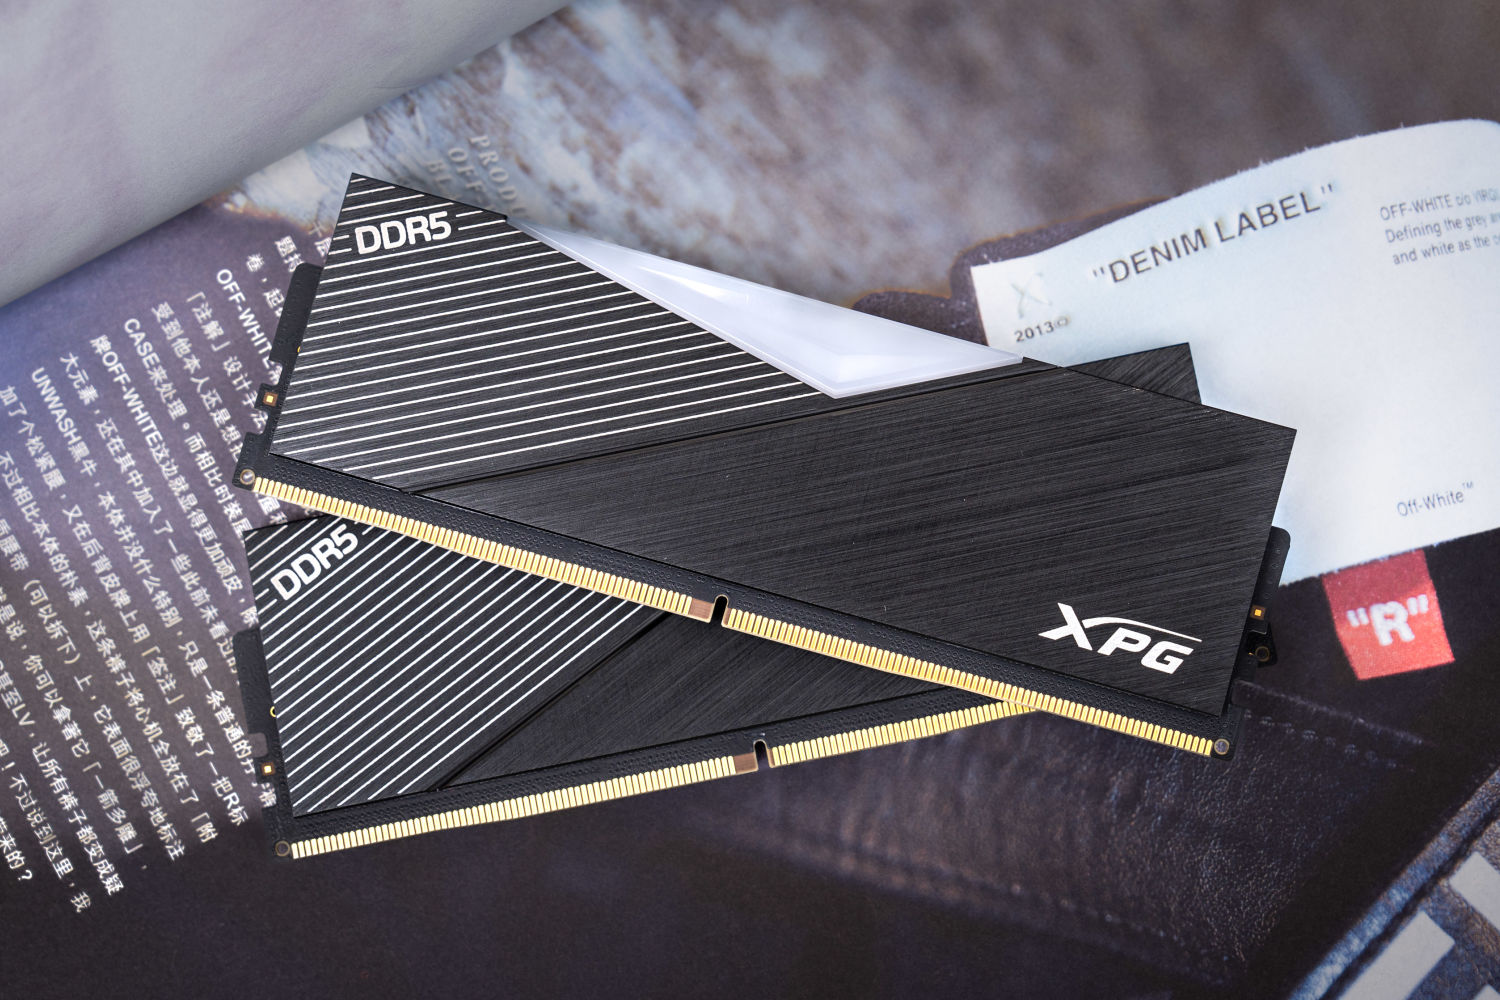 电压不锁可玩性高：XPG龙耀DDR5 使用体验